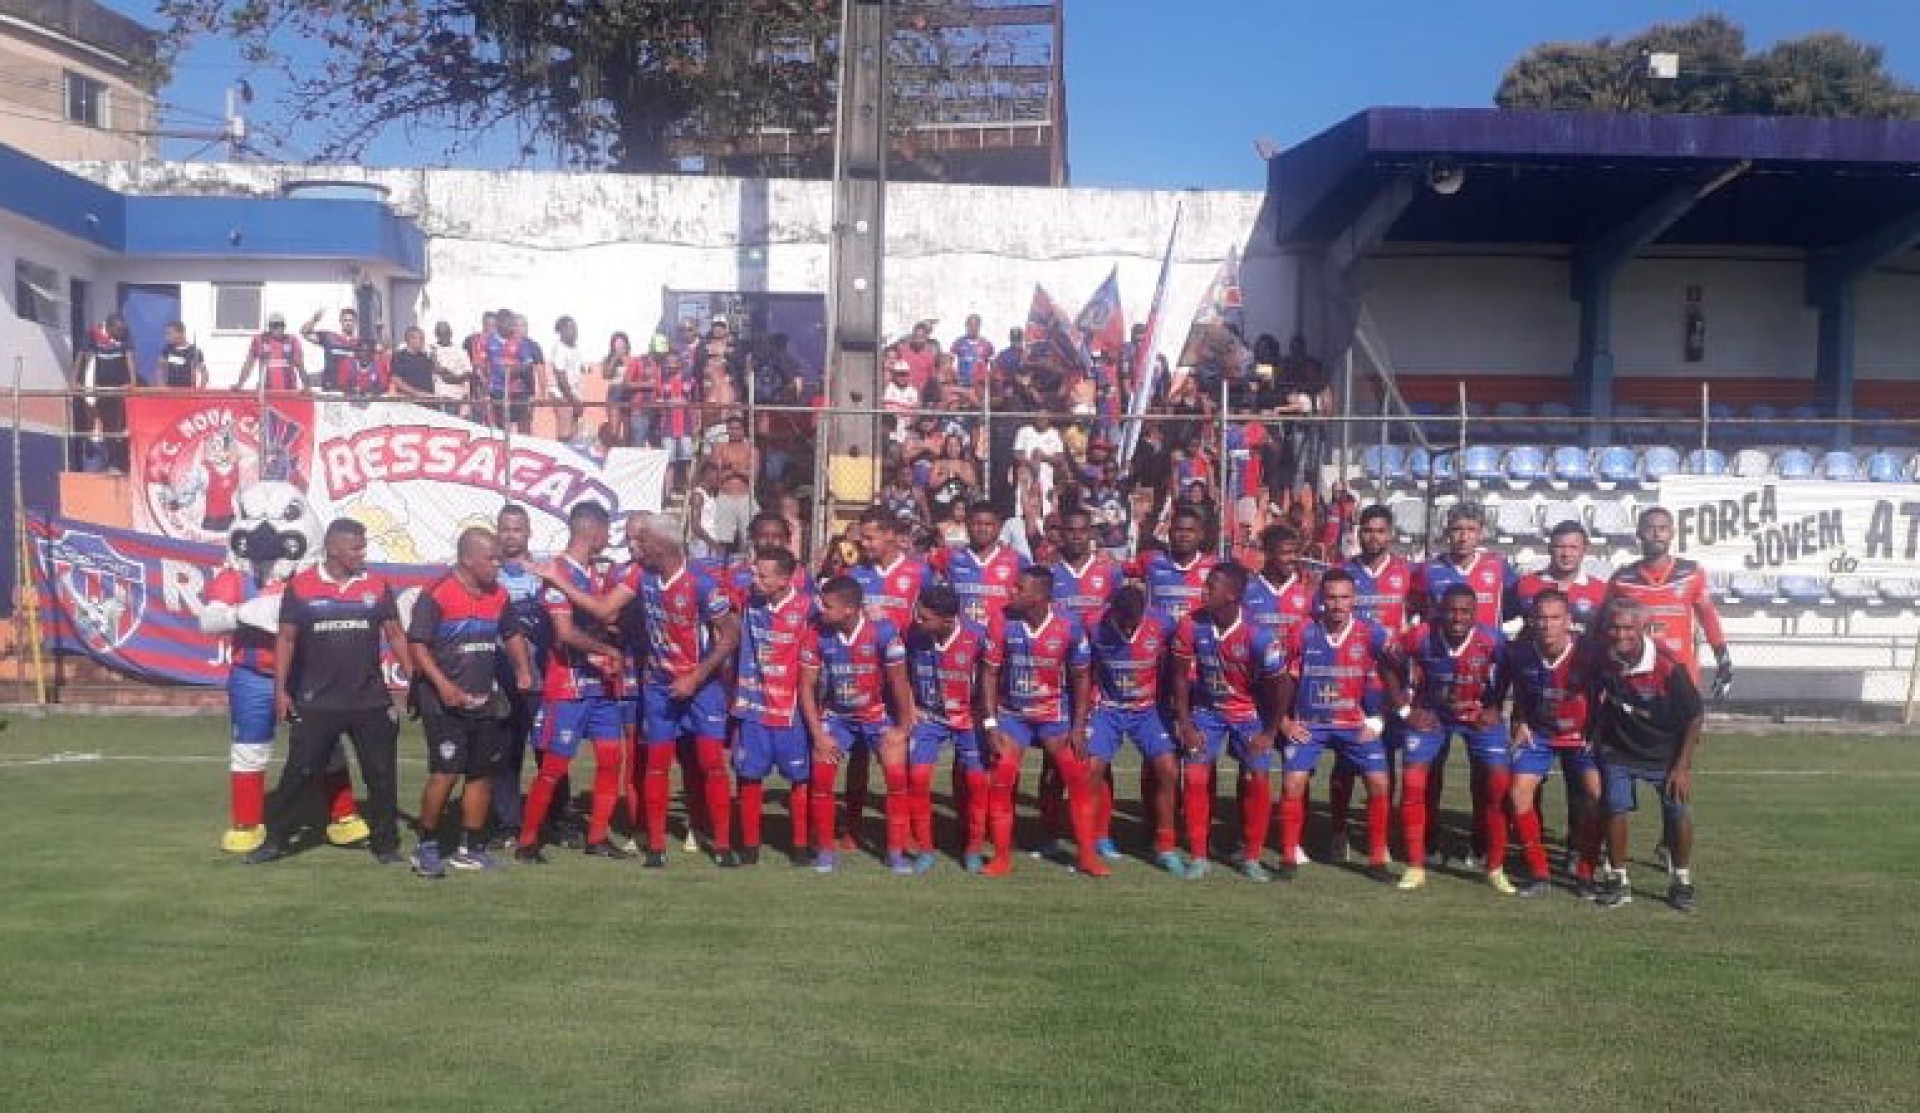 O Sociedade Esportiva Belford Roxo posando antes do início do jogo em Itaboraí - Marcos Leandro / SEBR